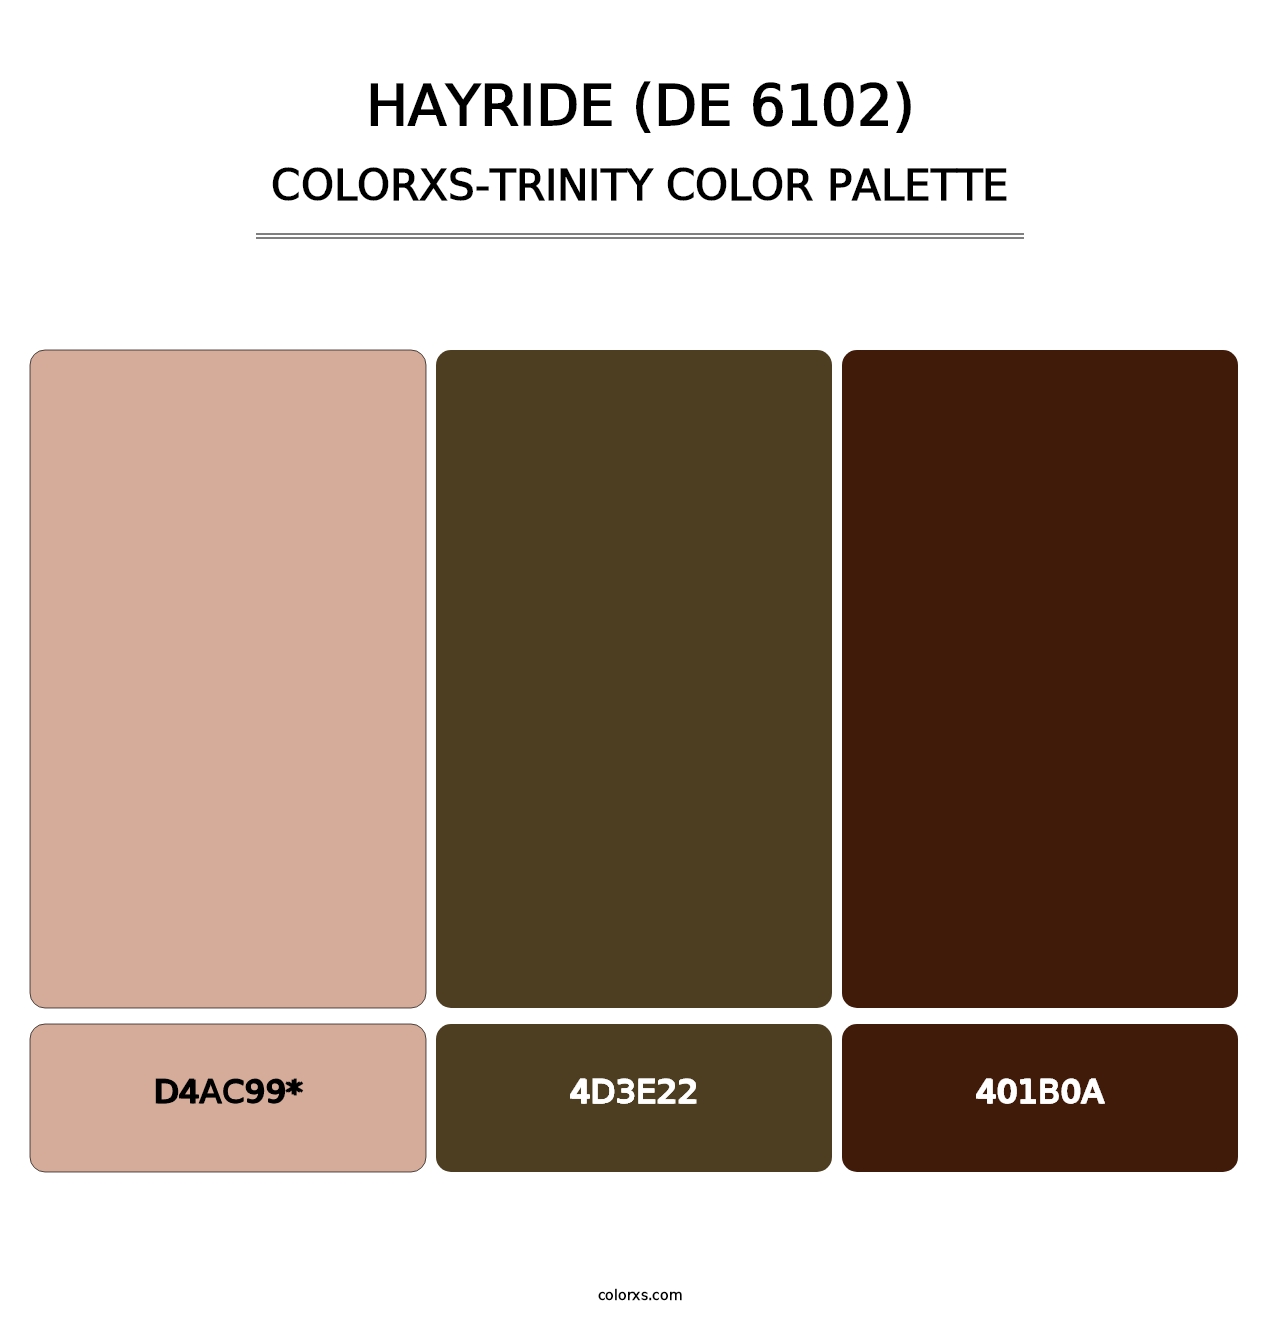 Hayride (DE 6102) - Colorxs Trinity Palette